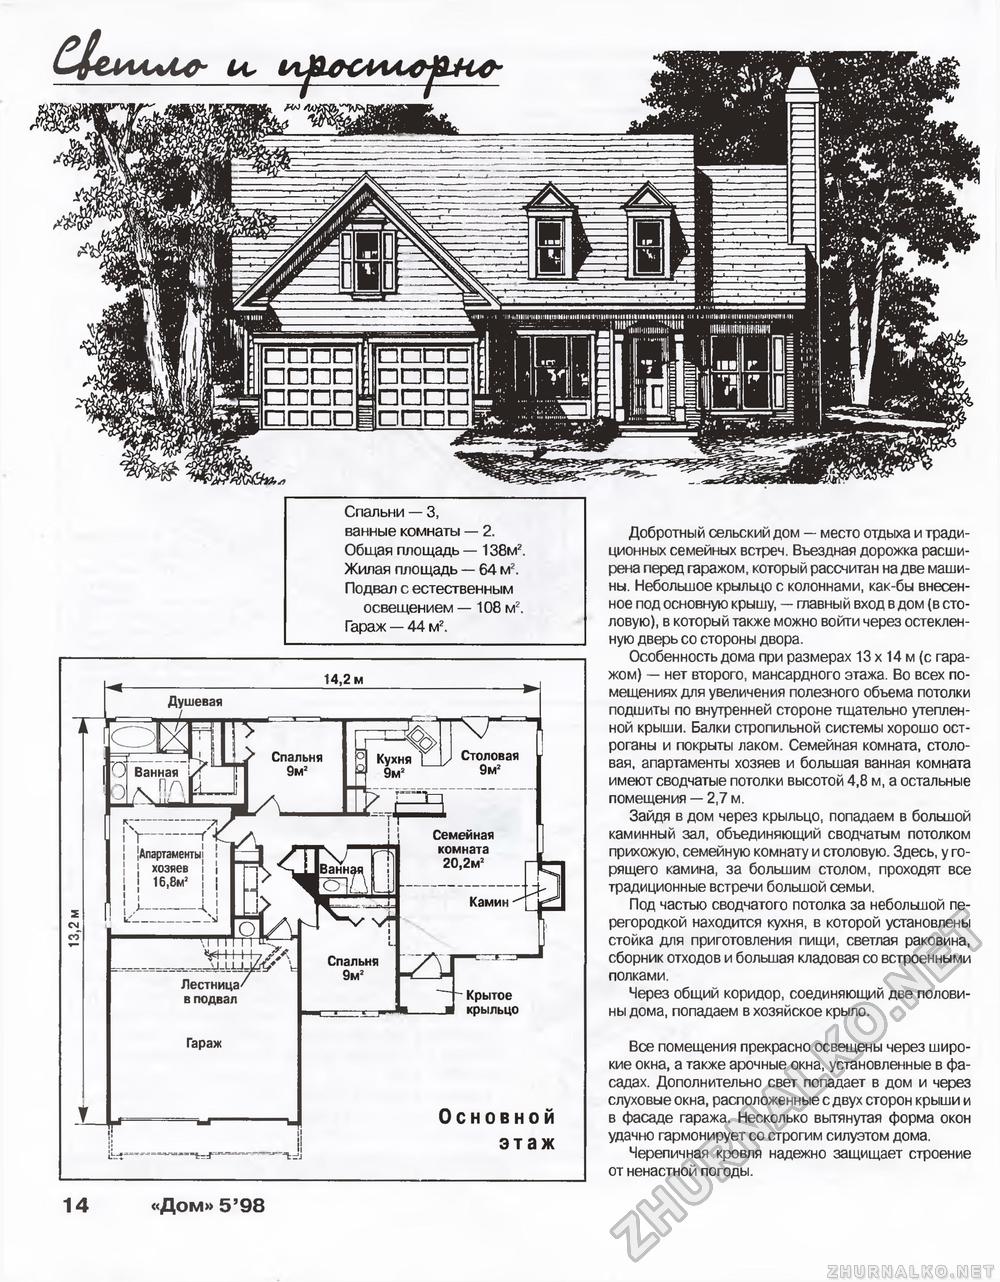 Дом 1998-05, страница 14